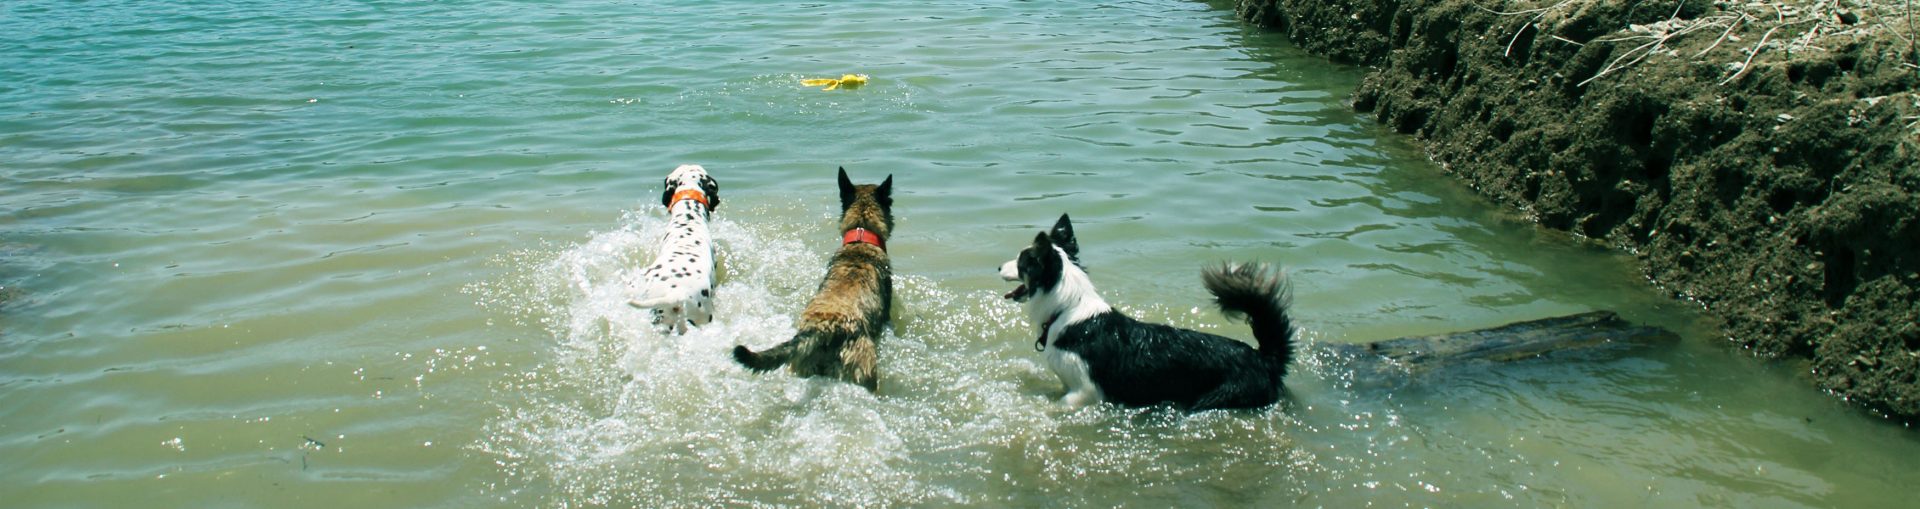 Días de vacaciones con perretes - Funny Dogs